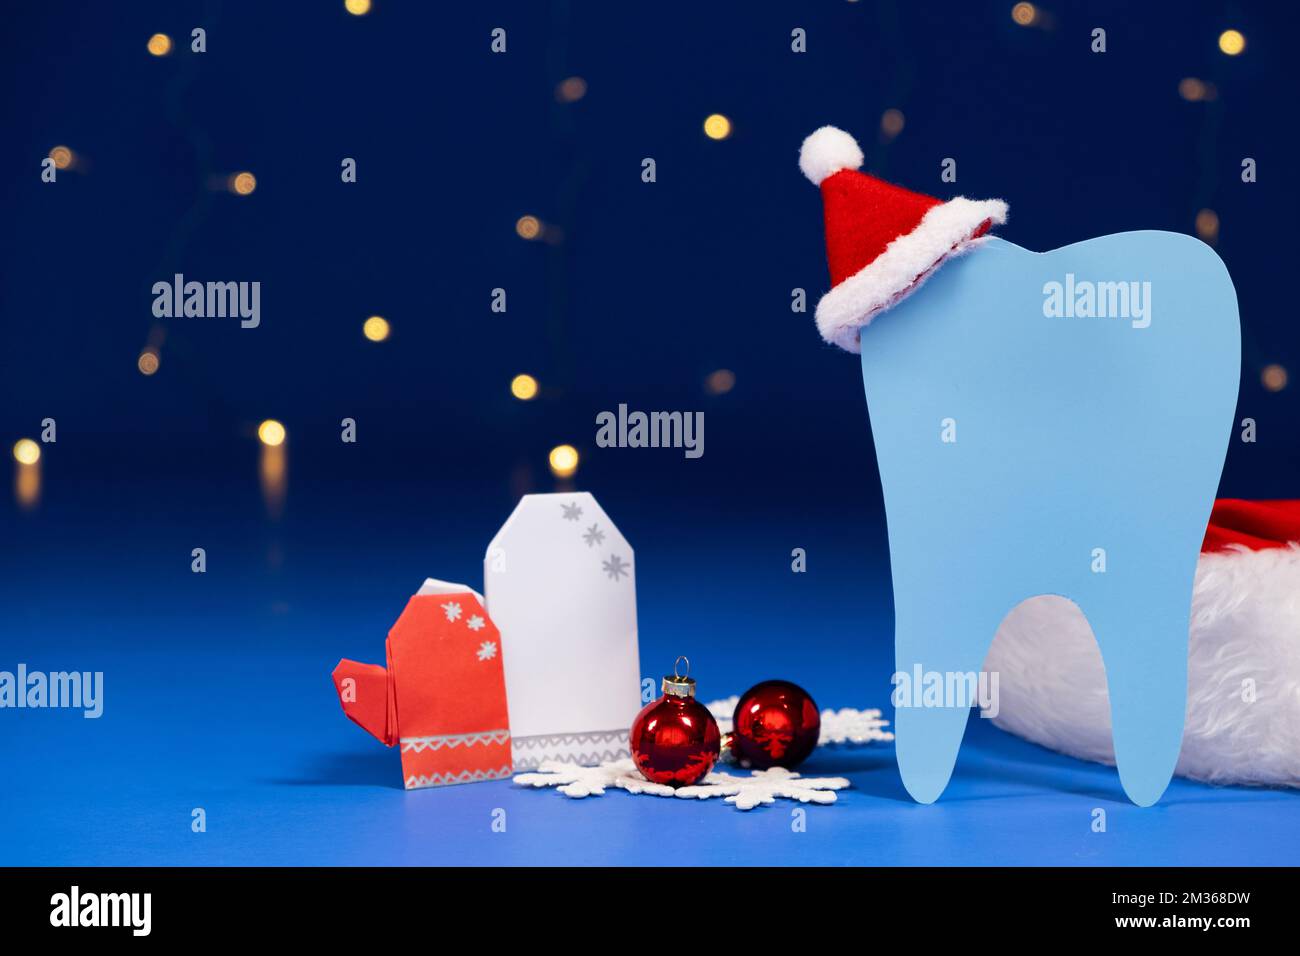 Dentisterie de Noël - dent avec chapeau de père noël rouge, moufles sur fond bleu. Banque D'Images